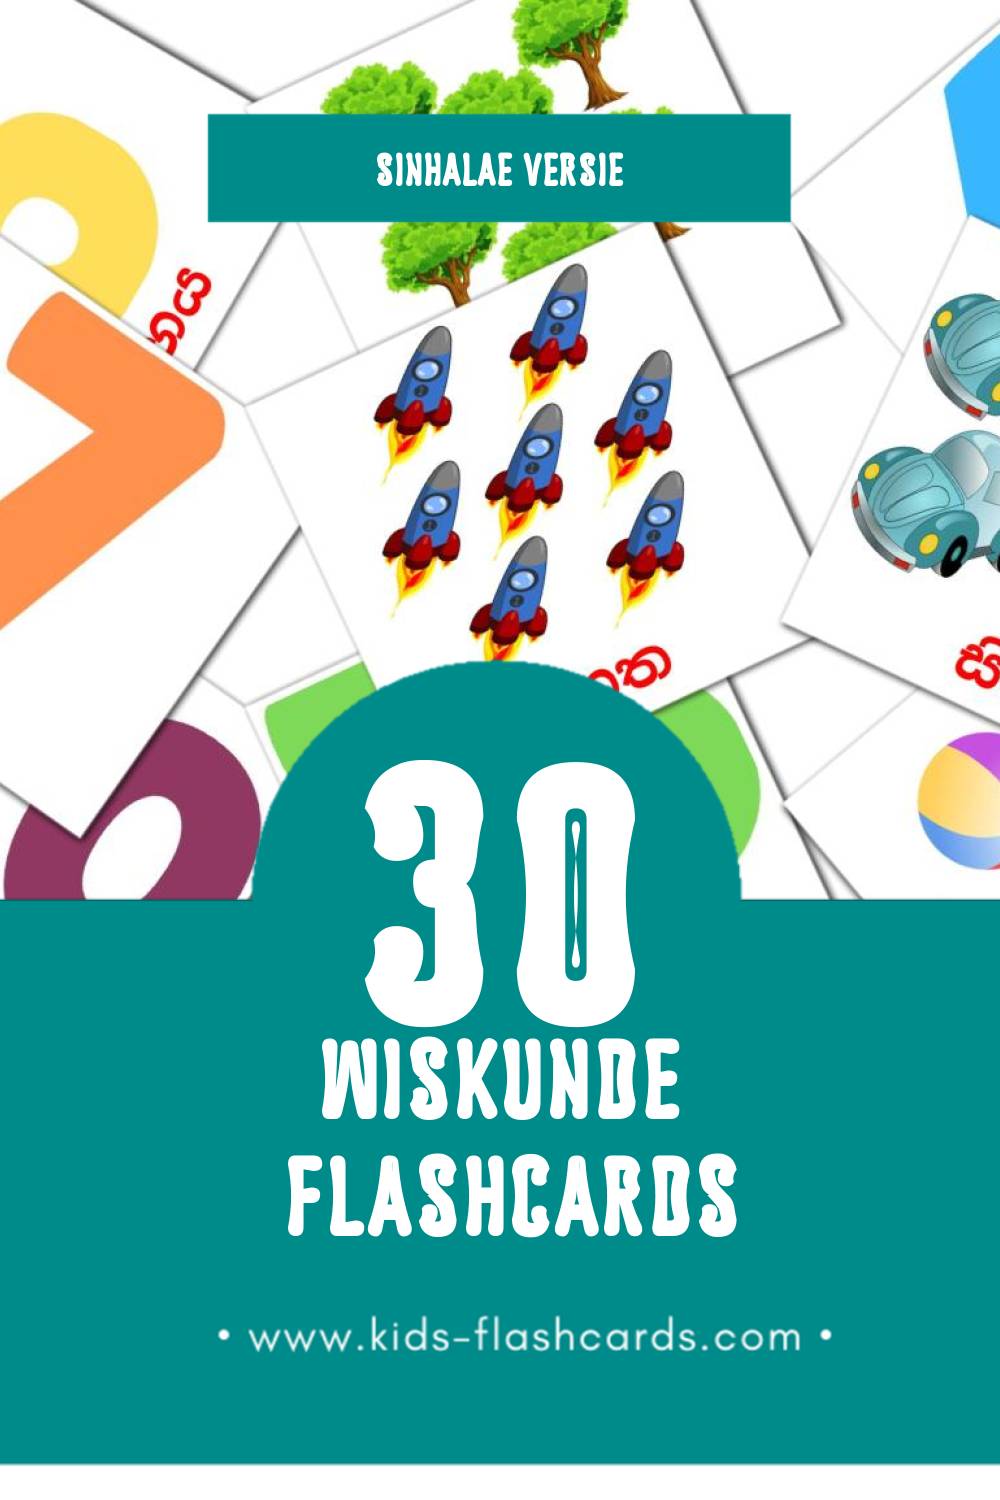 Visuele ගණිතය Flashcards voor Kleuters (30 kaarten in het Sinhala)